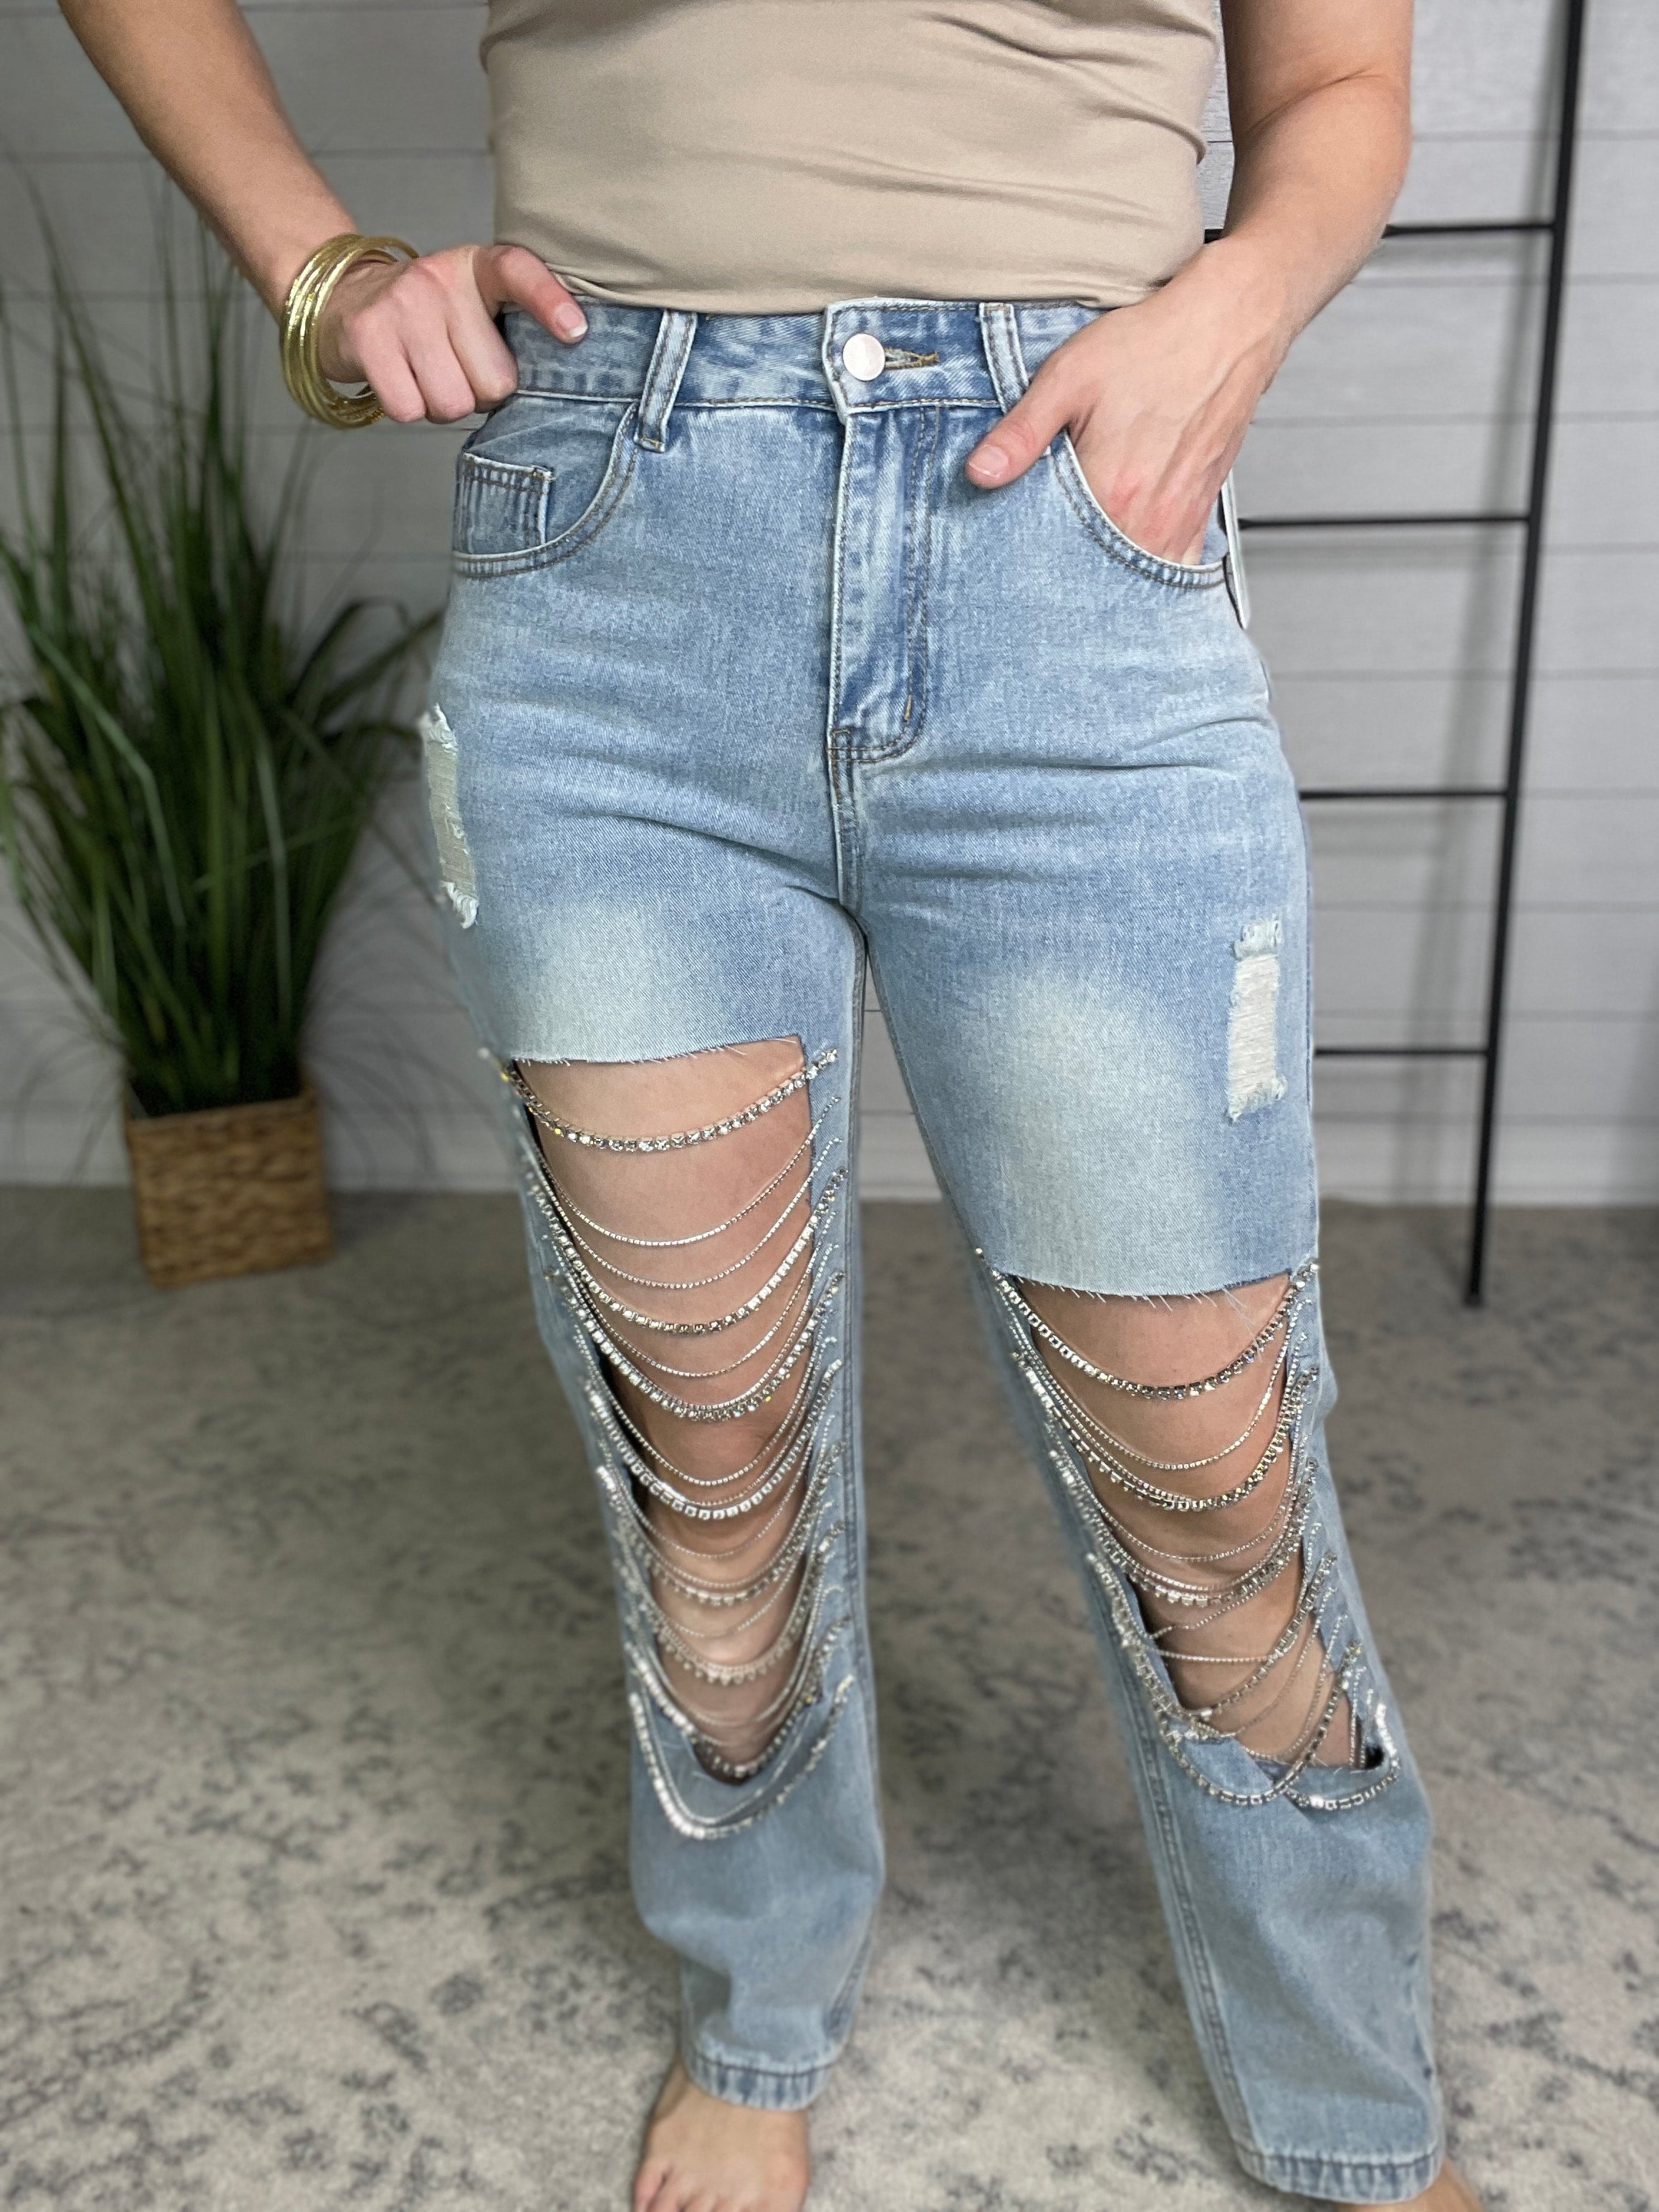 Belle Ever After Boutique. LLC Rhinestone Rebel Bling Jeans (Medium)